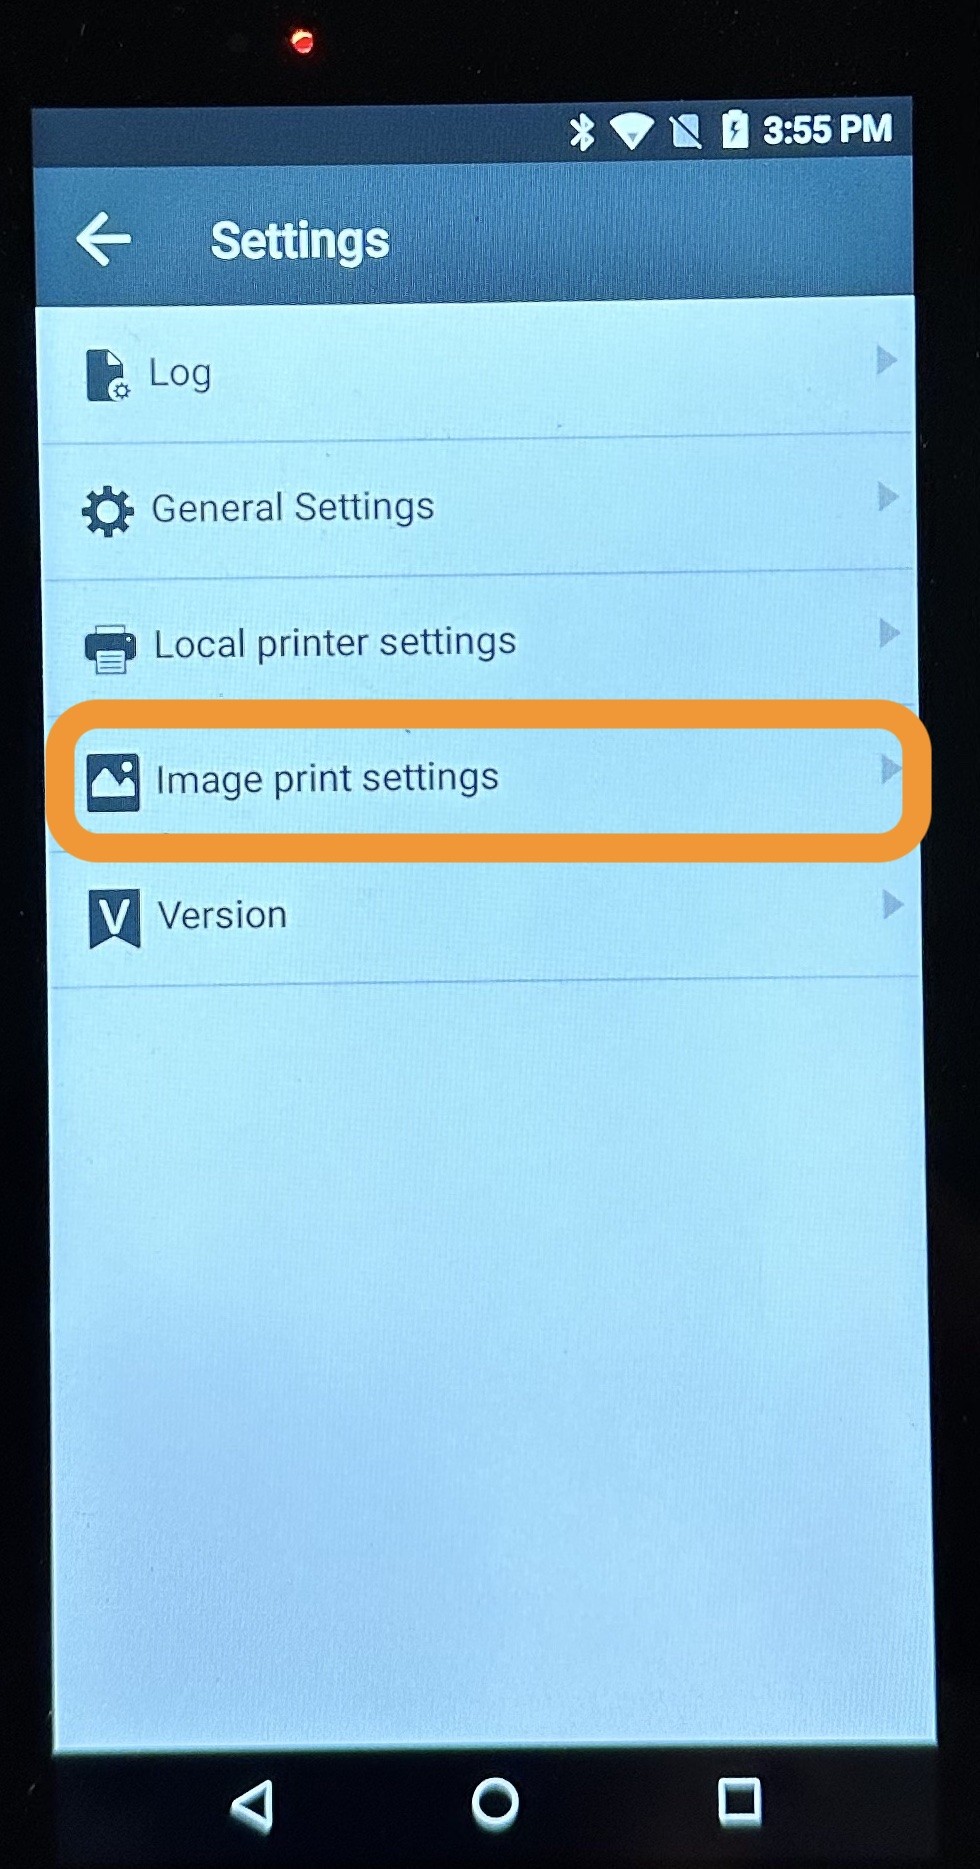 handheld_printer_settings_image_print_settings.jpeg